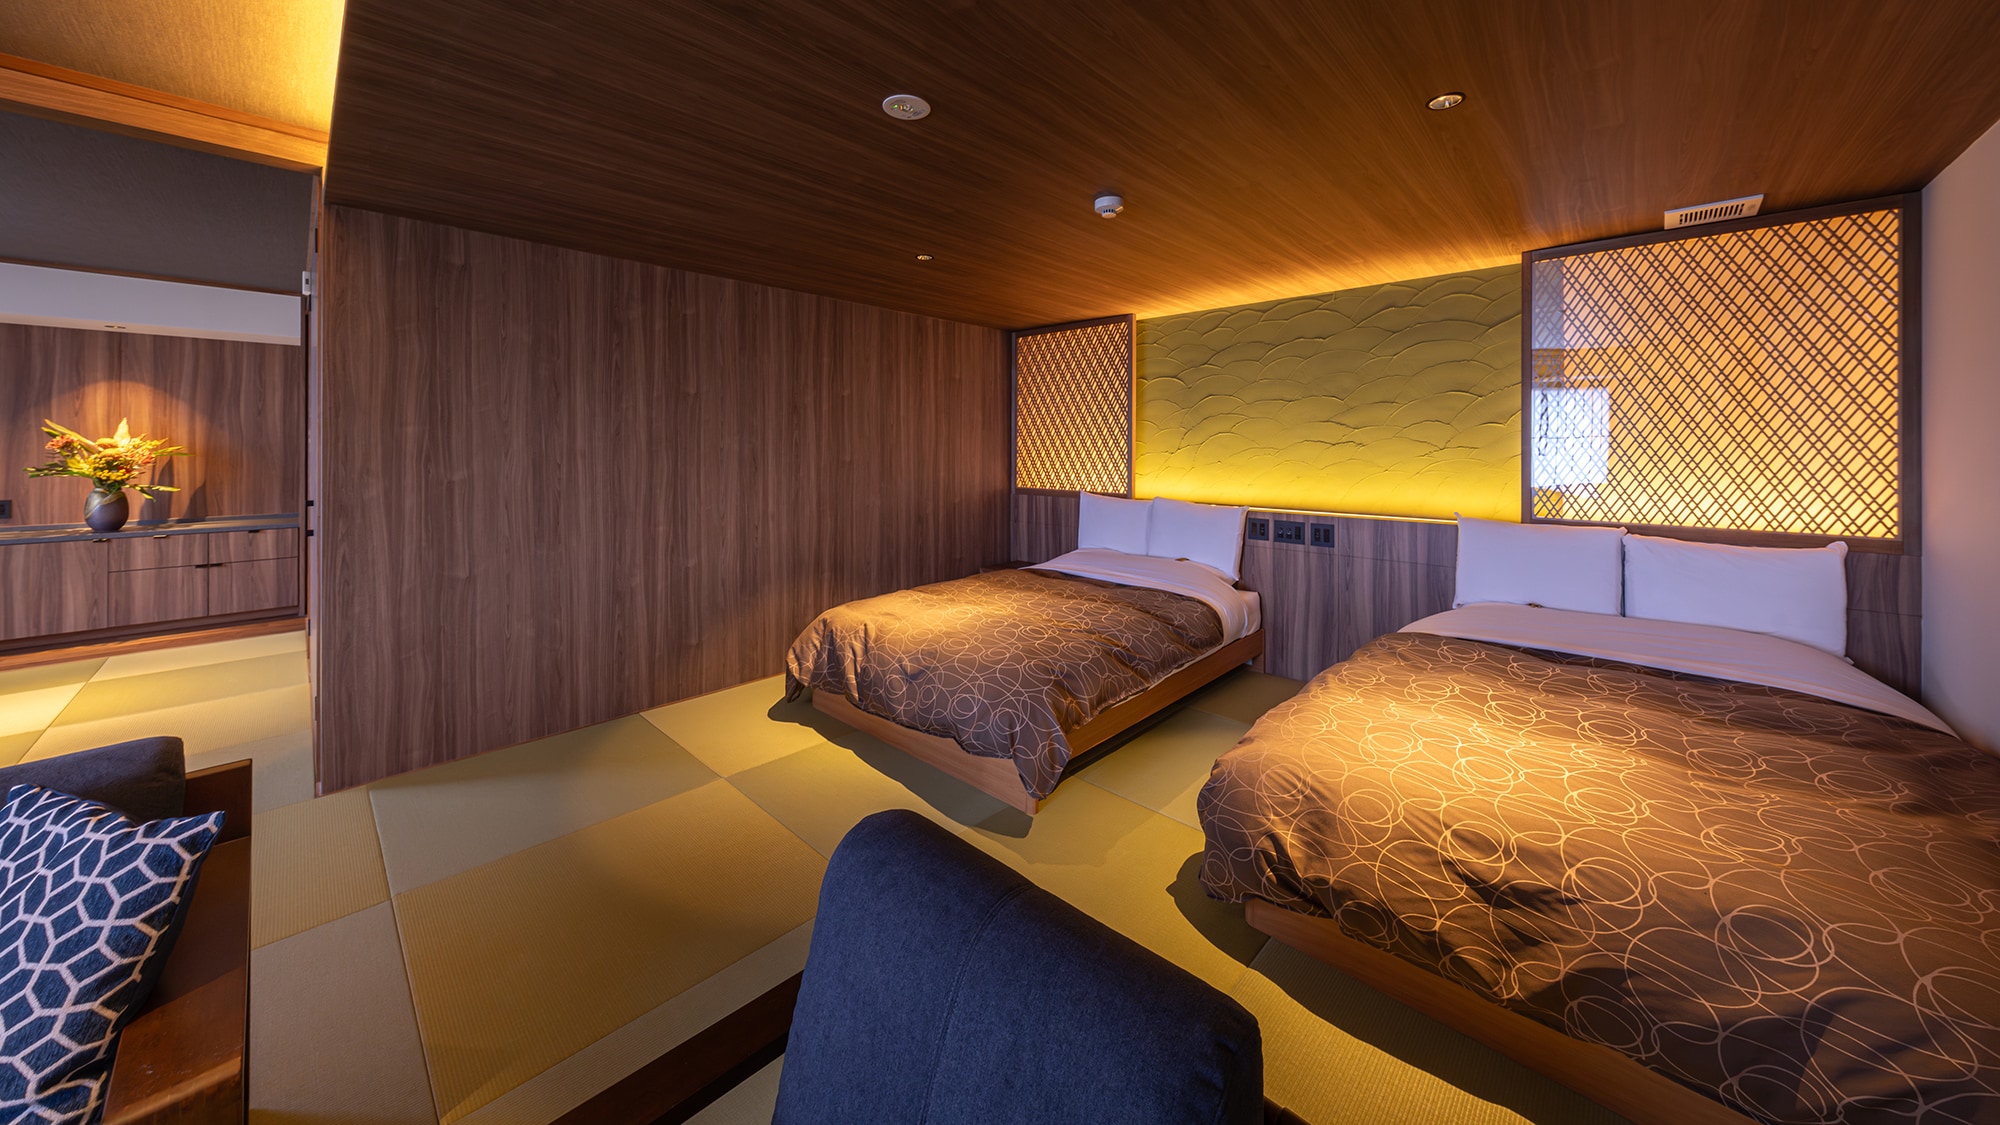 56平方公尺的舒適日西合璧的房間，可以讓您一起度過特別的時光。在舒適的單人床上享受一夜好眠。